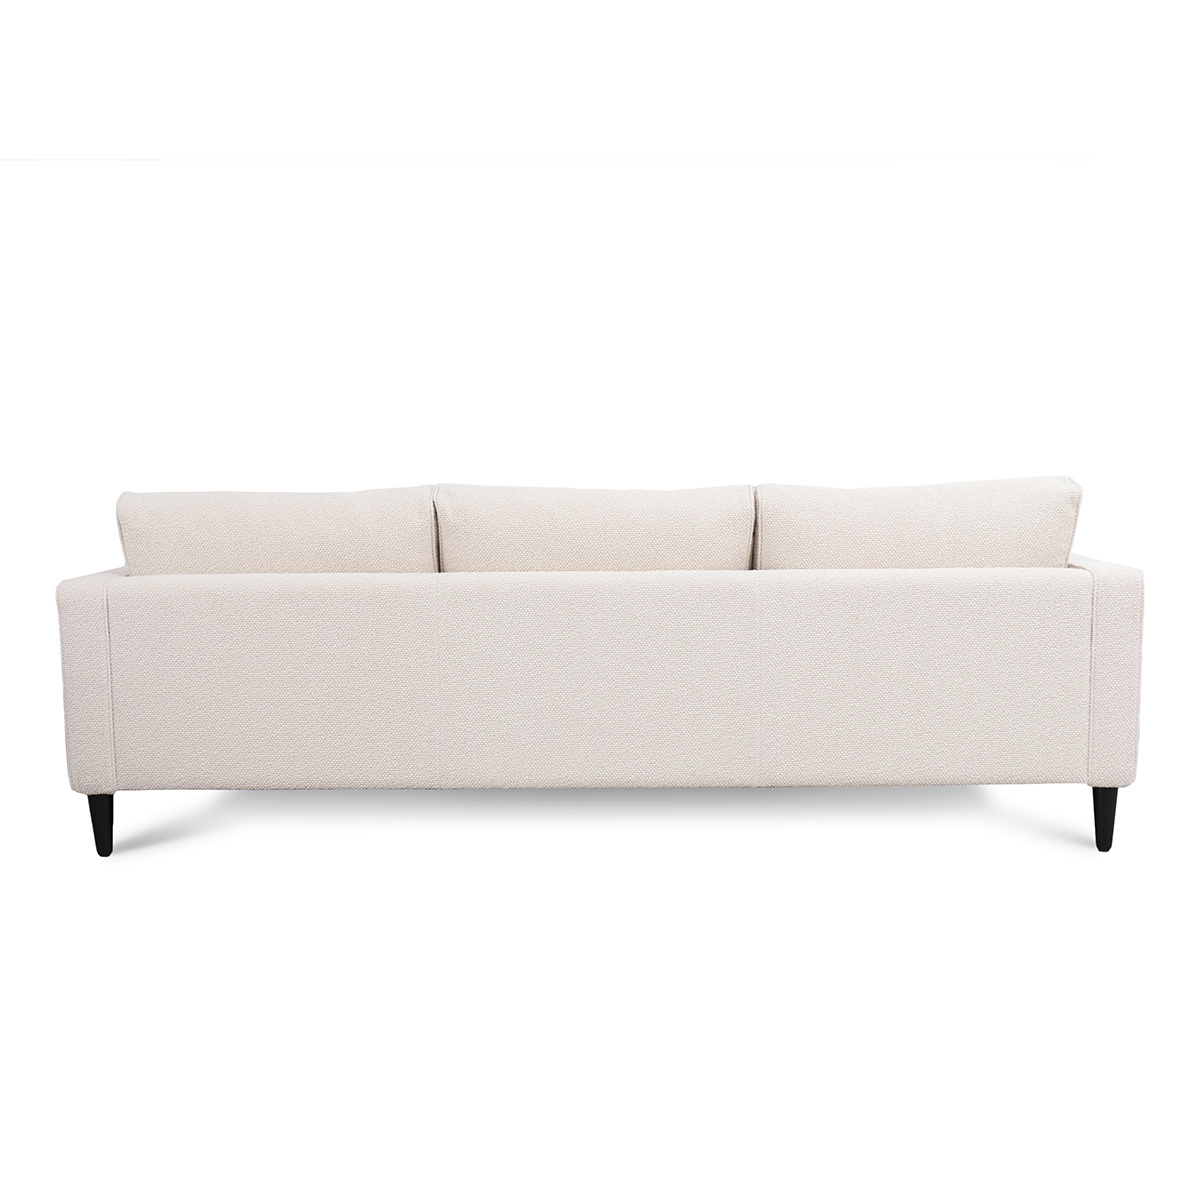 Sofa Noa, Wood - L230 x P90 x H80 cm - image 7